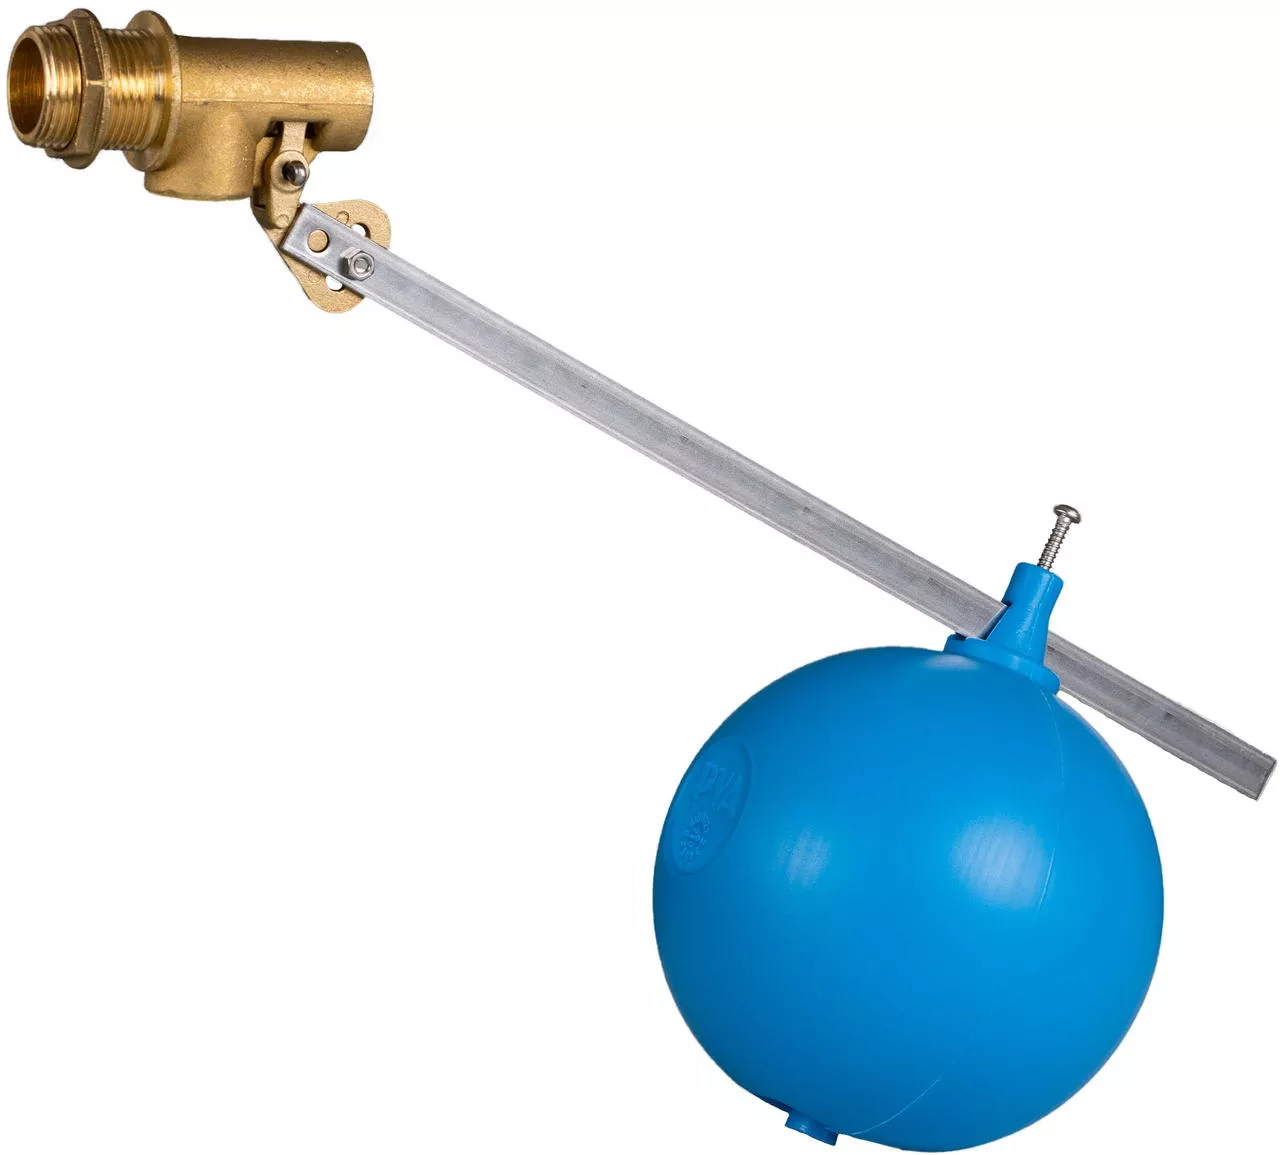 ECODROP: Level regulation with a floating valve